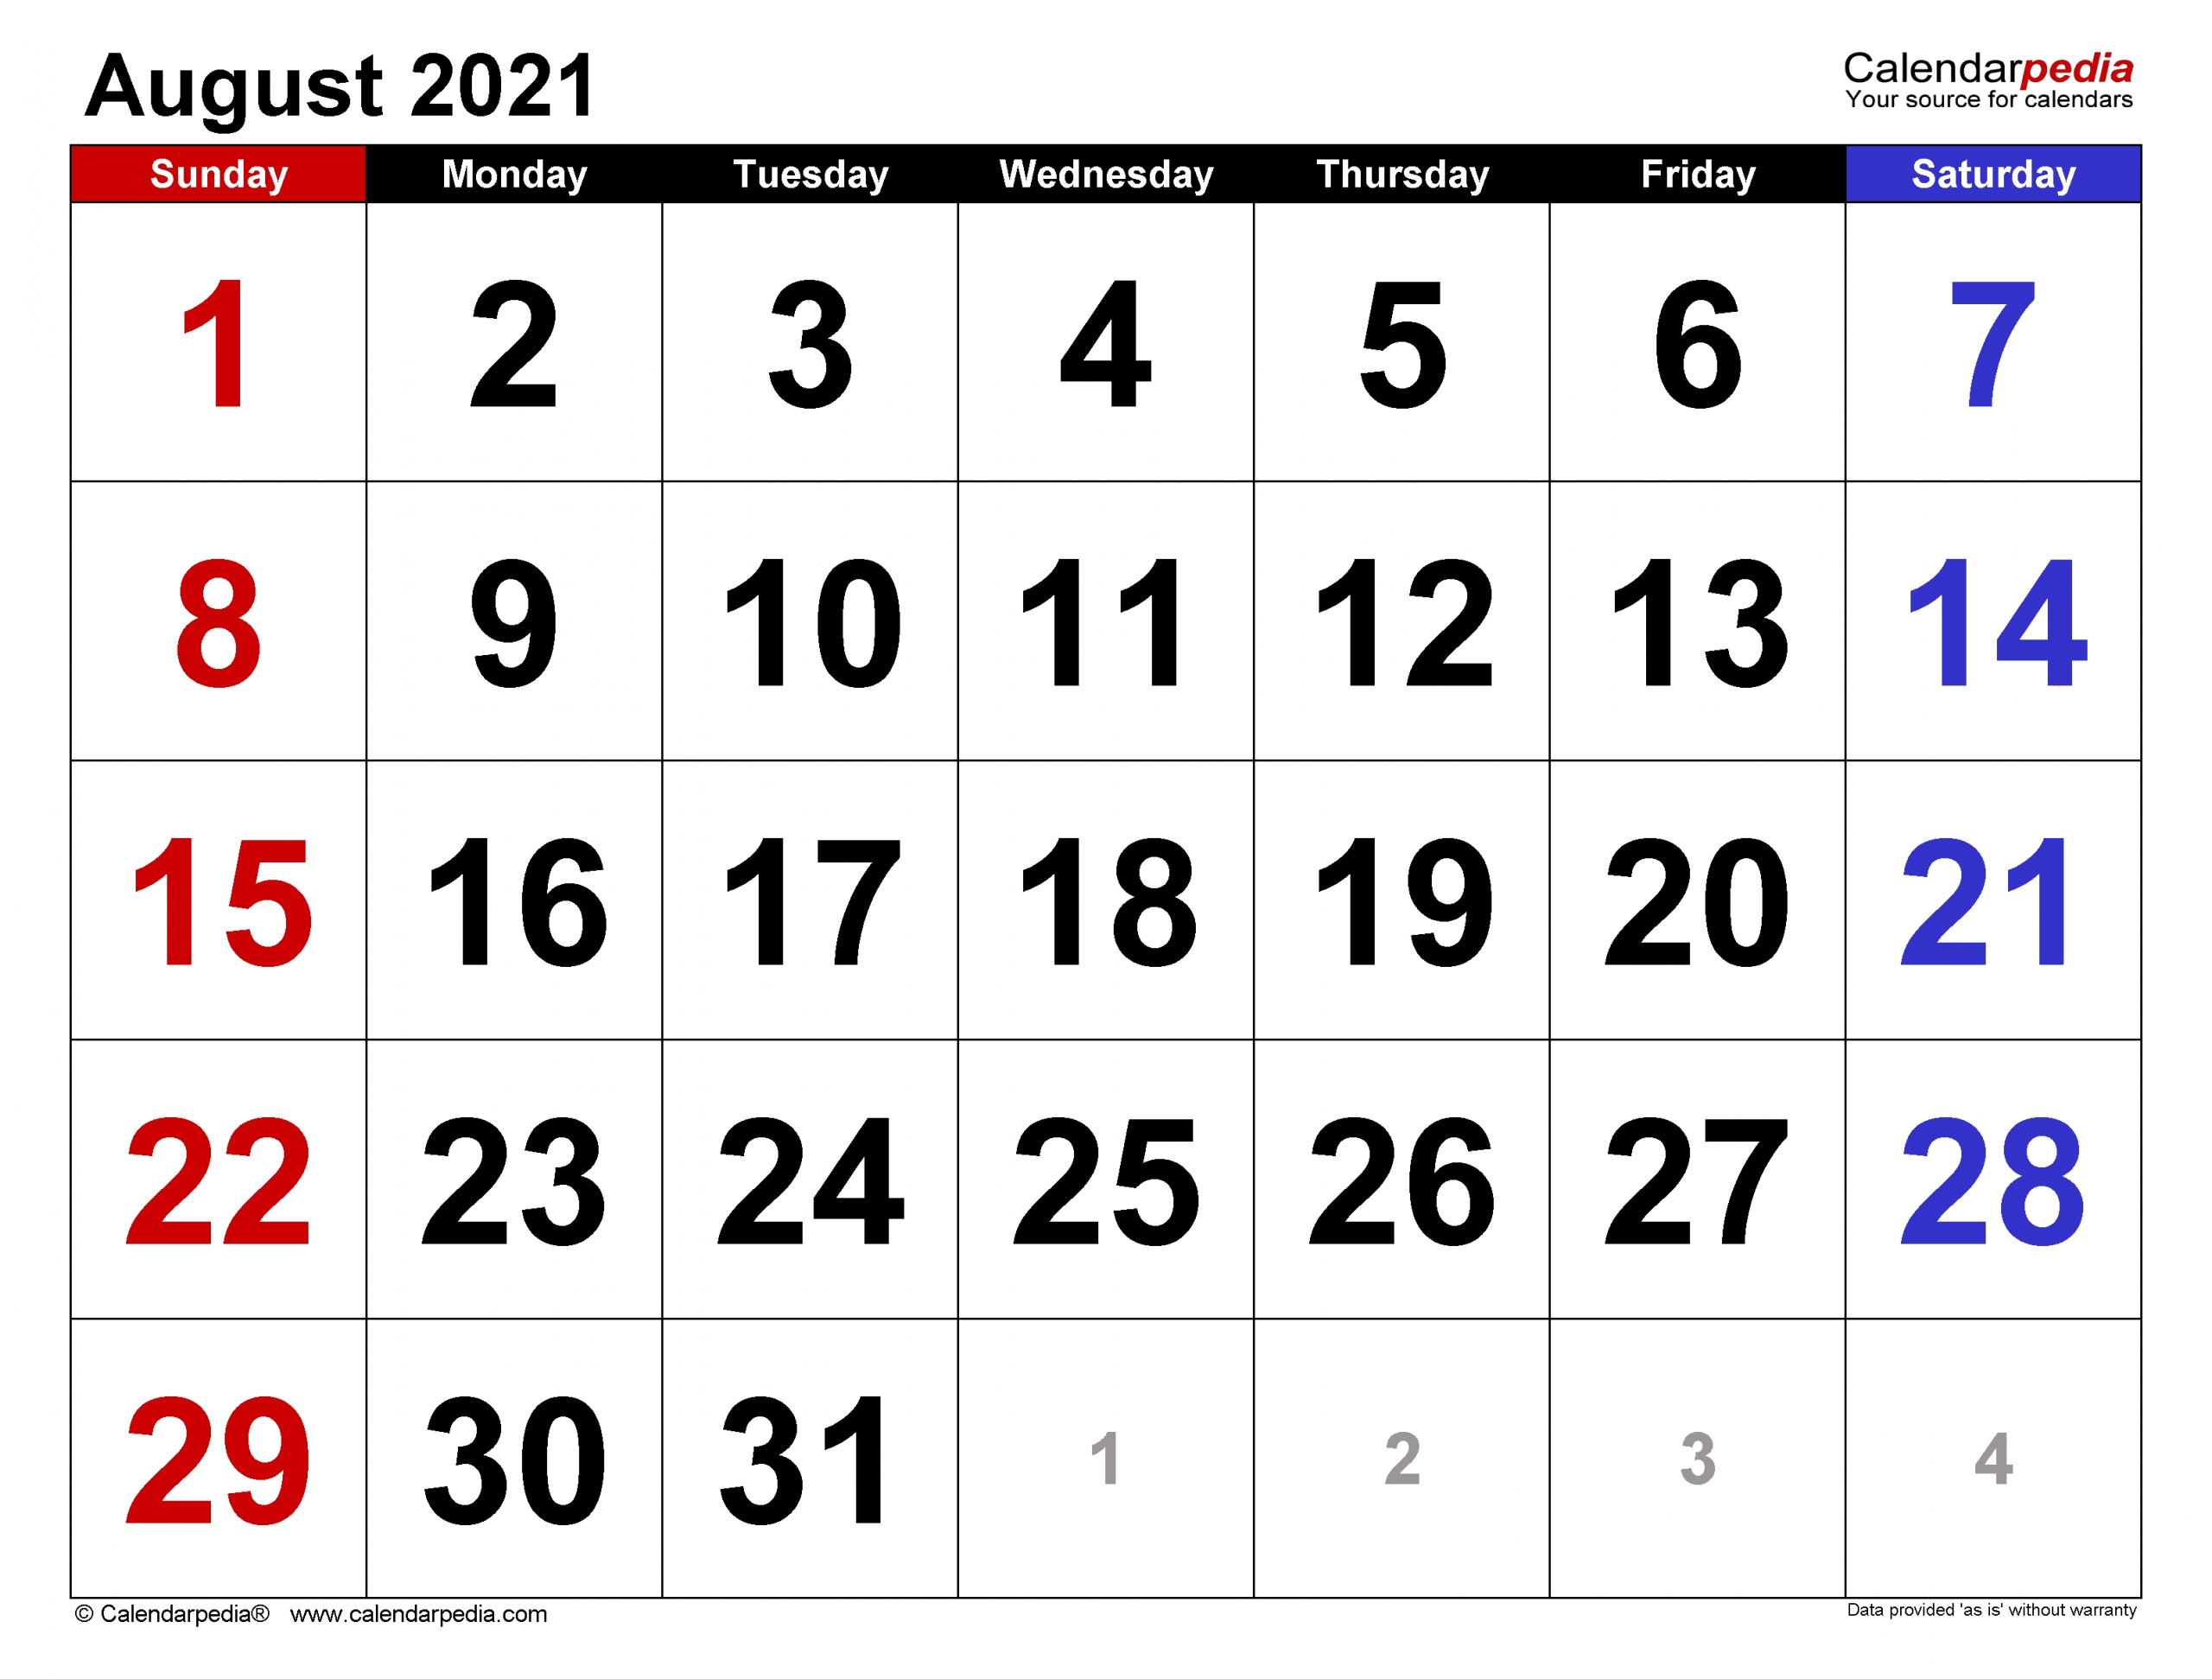 Get August 2021 Calendar Fill In